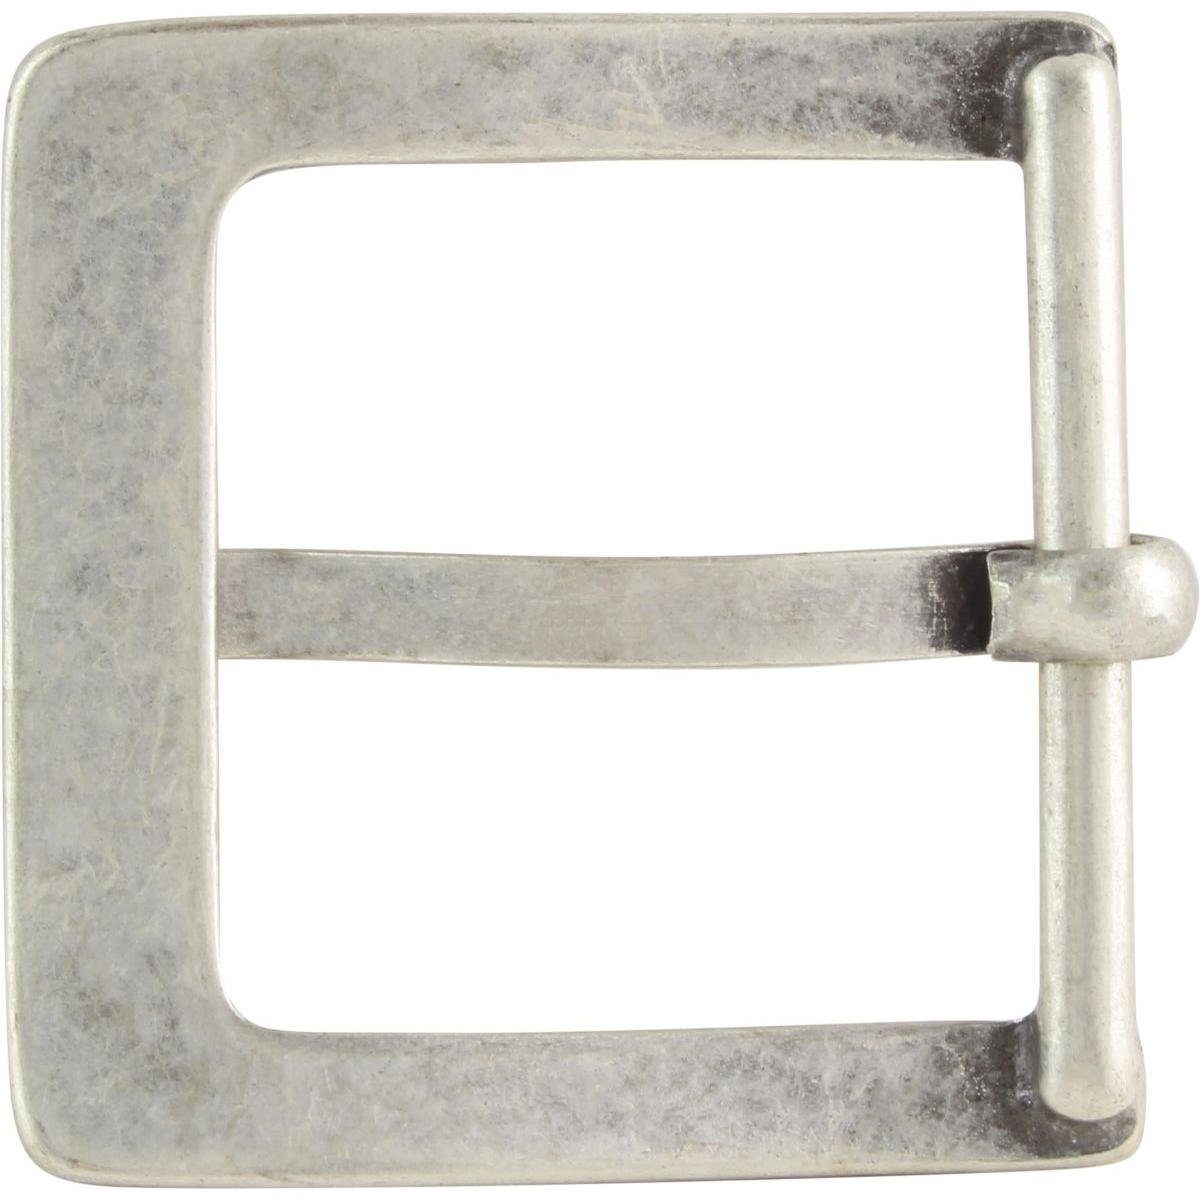 BELTINGER Gürtelschnalle 4,5 cm - Gürtelschließe 45mm - Dorn-Schließe - Für  Gürtel bis zu 4.5cm